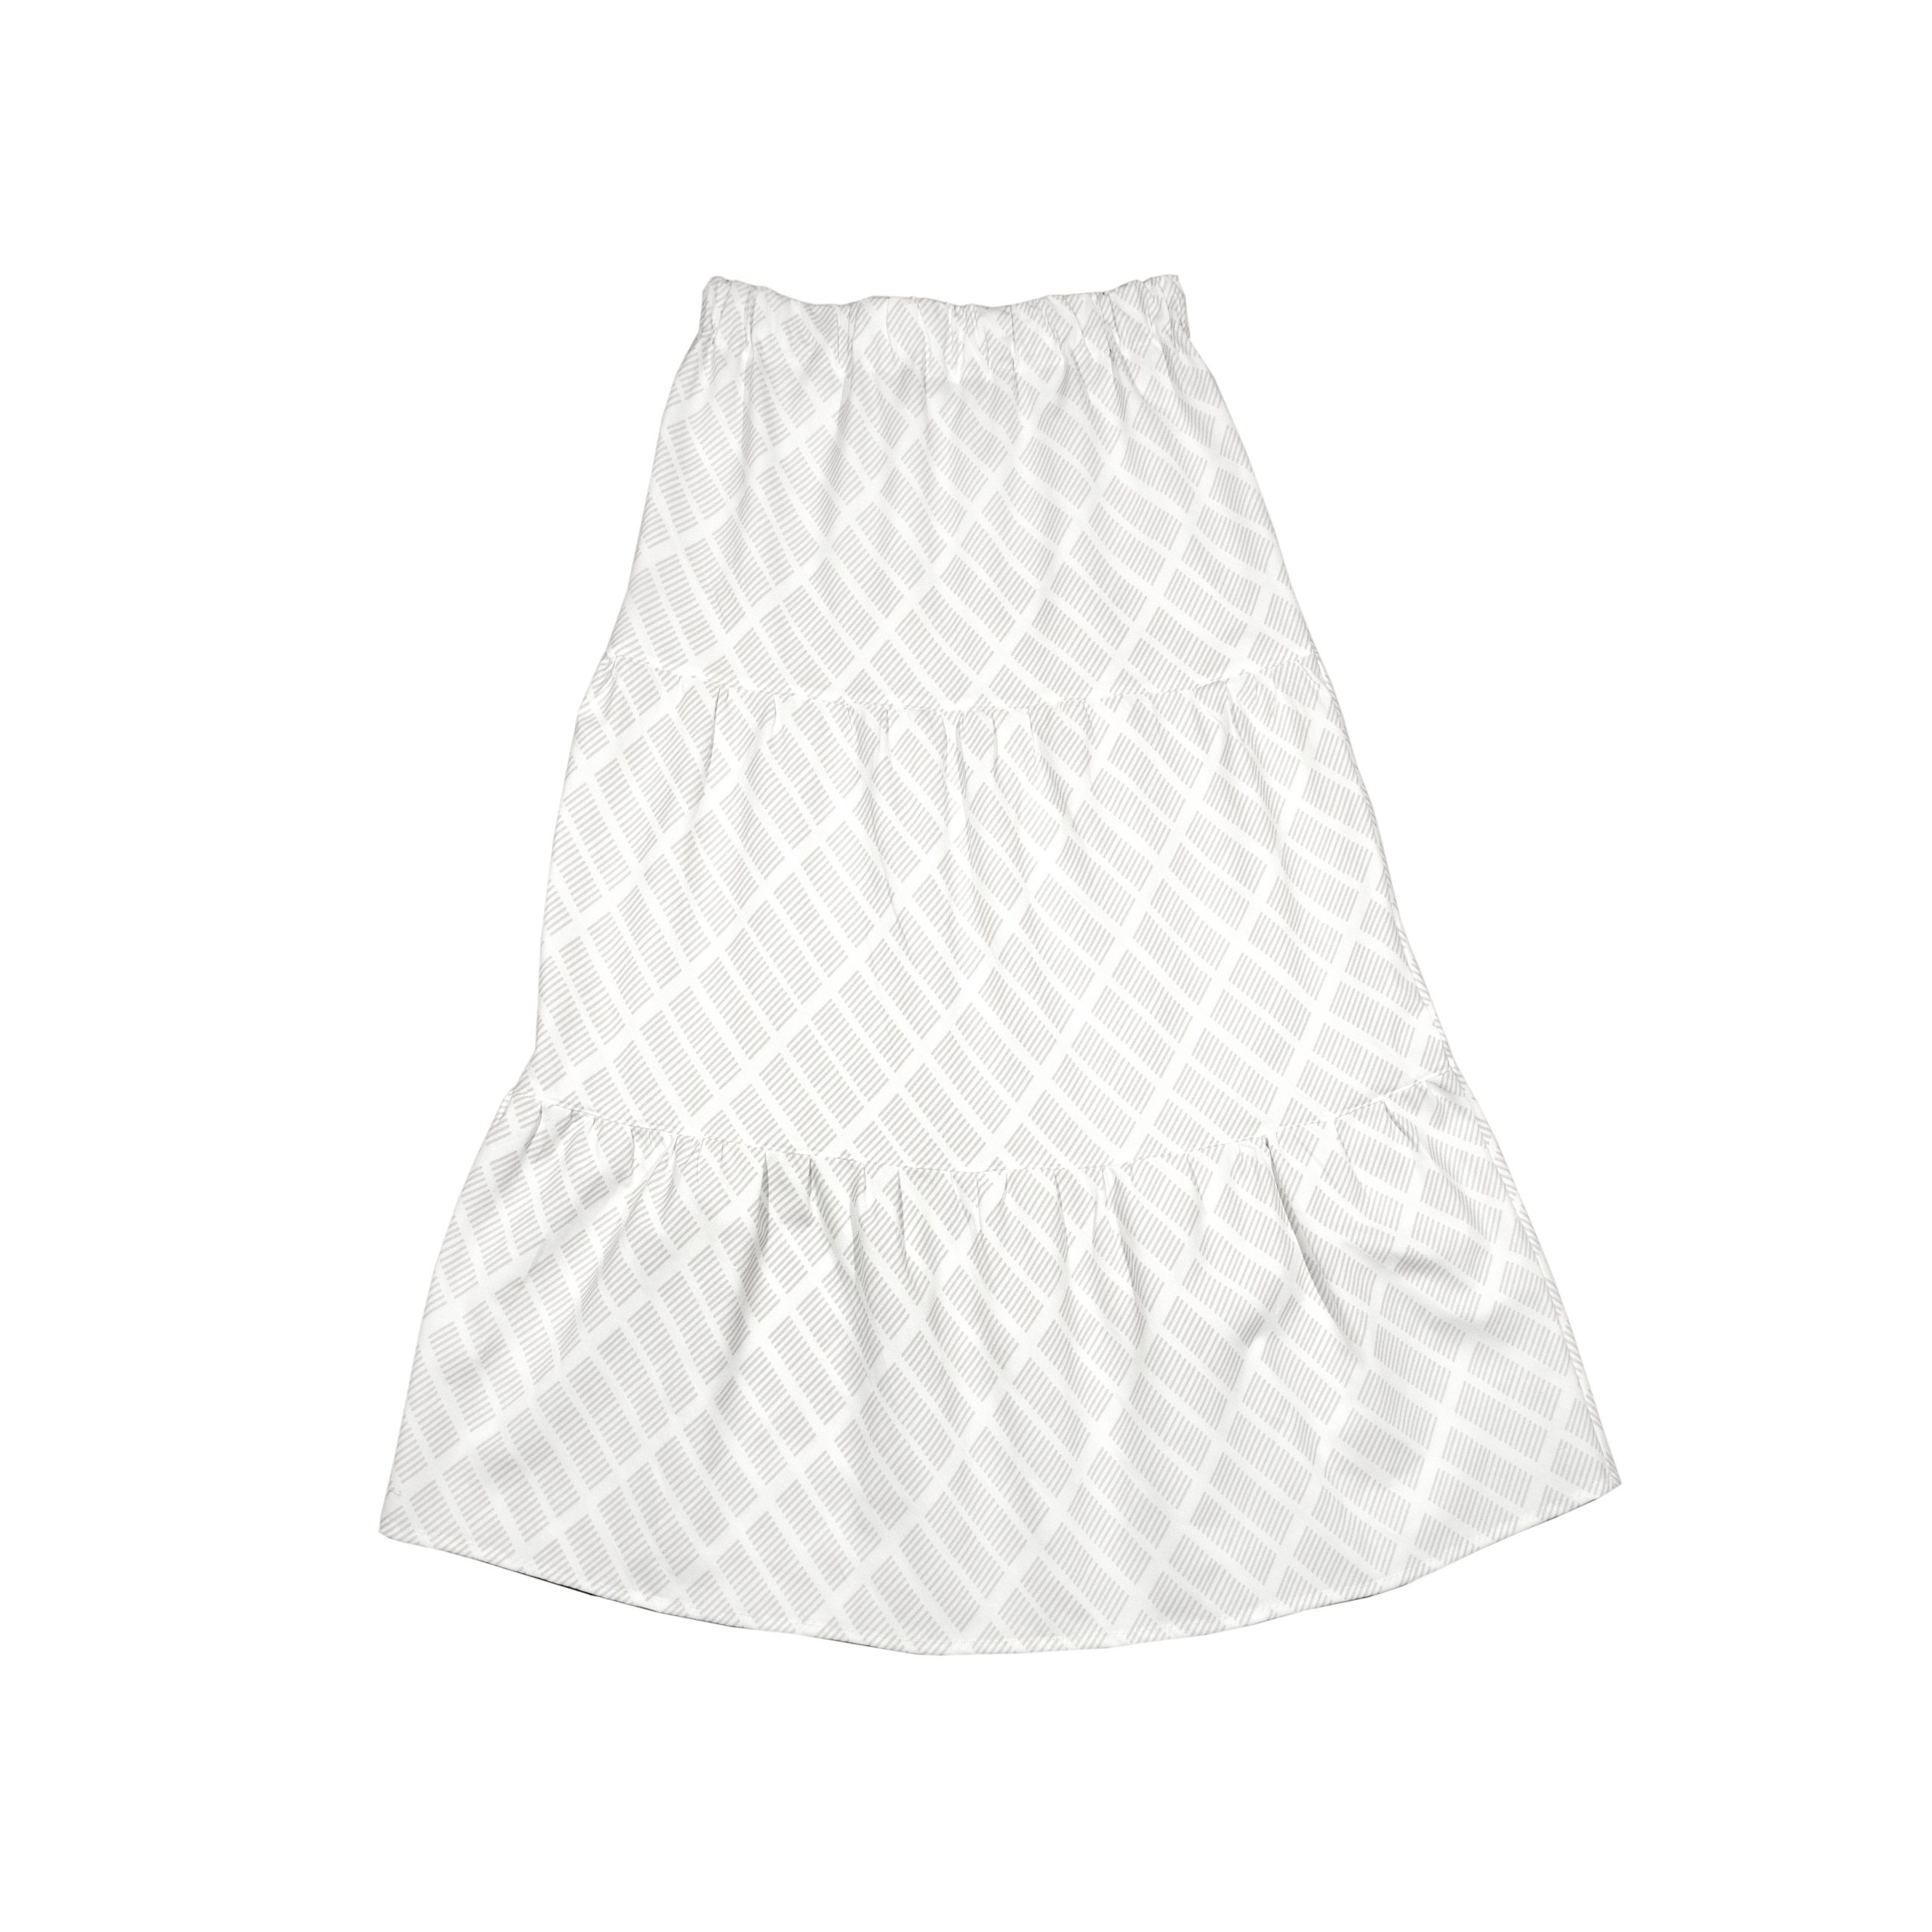 Sonya skirt, Tile grey, design Anne Rosenberg, RosenbergCph